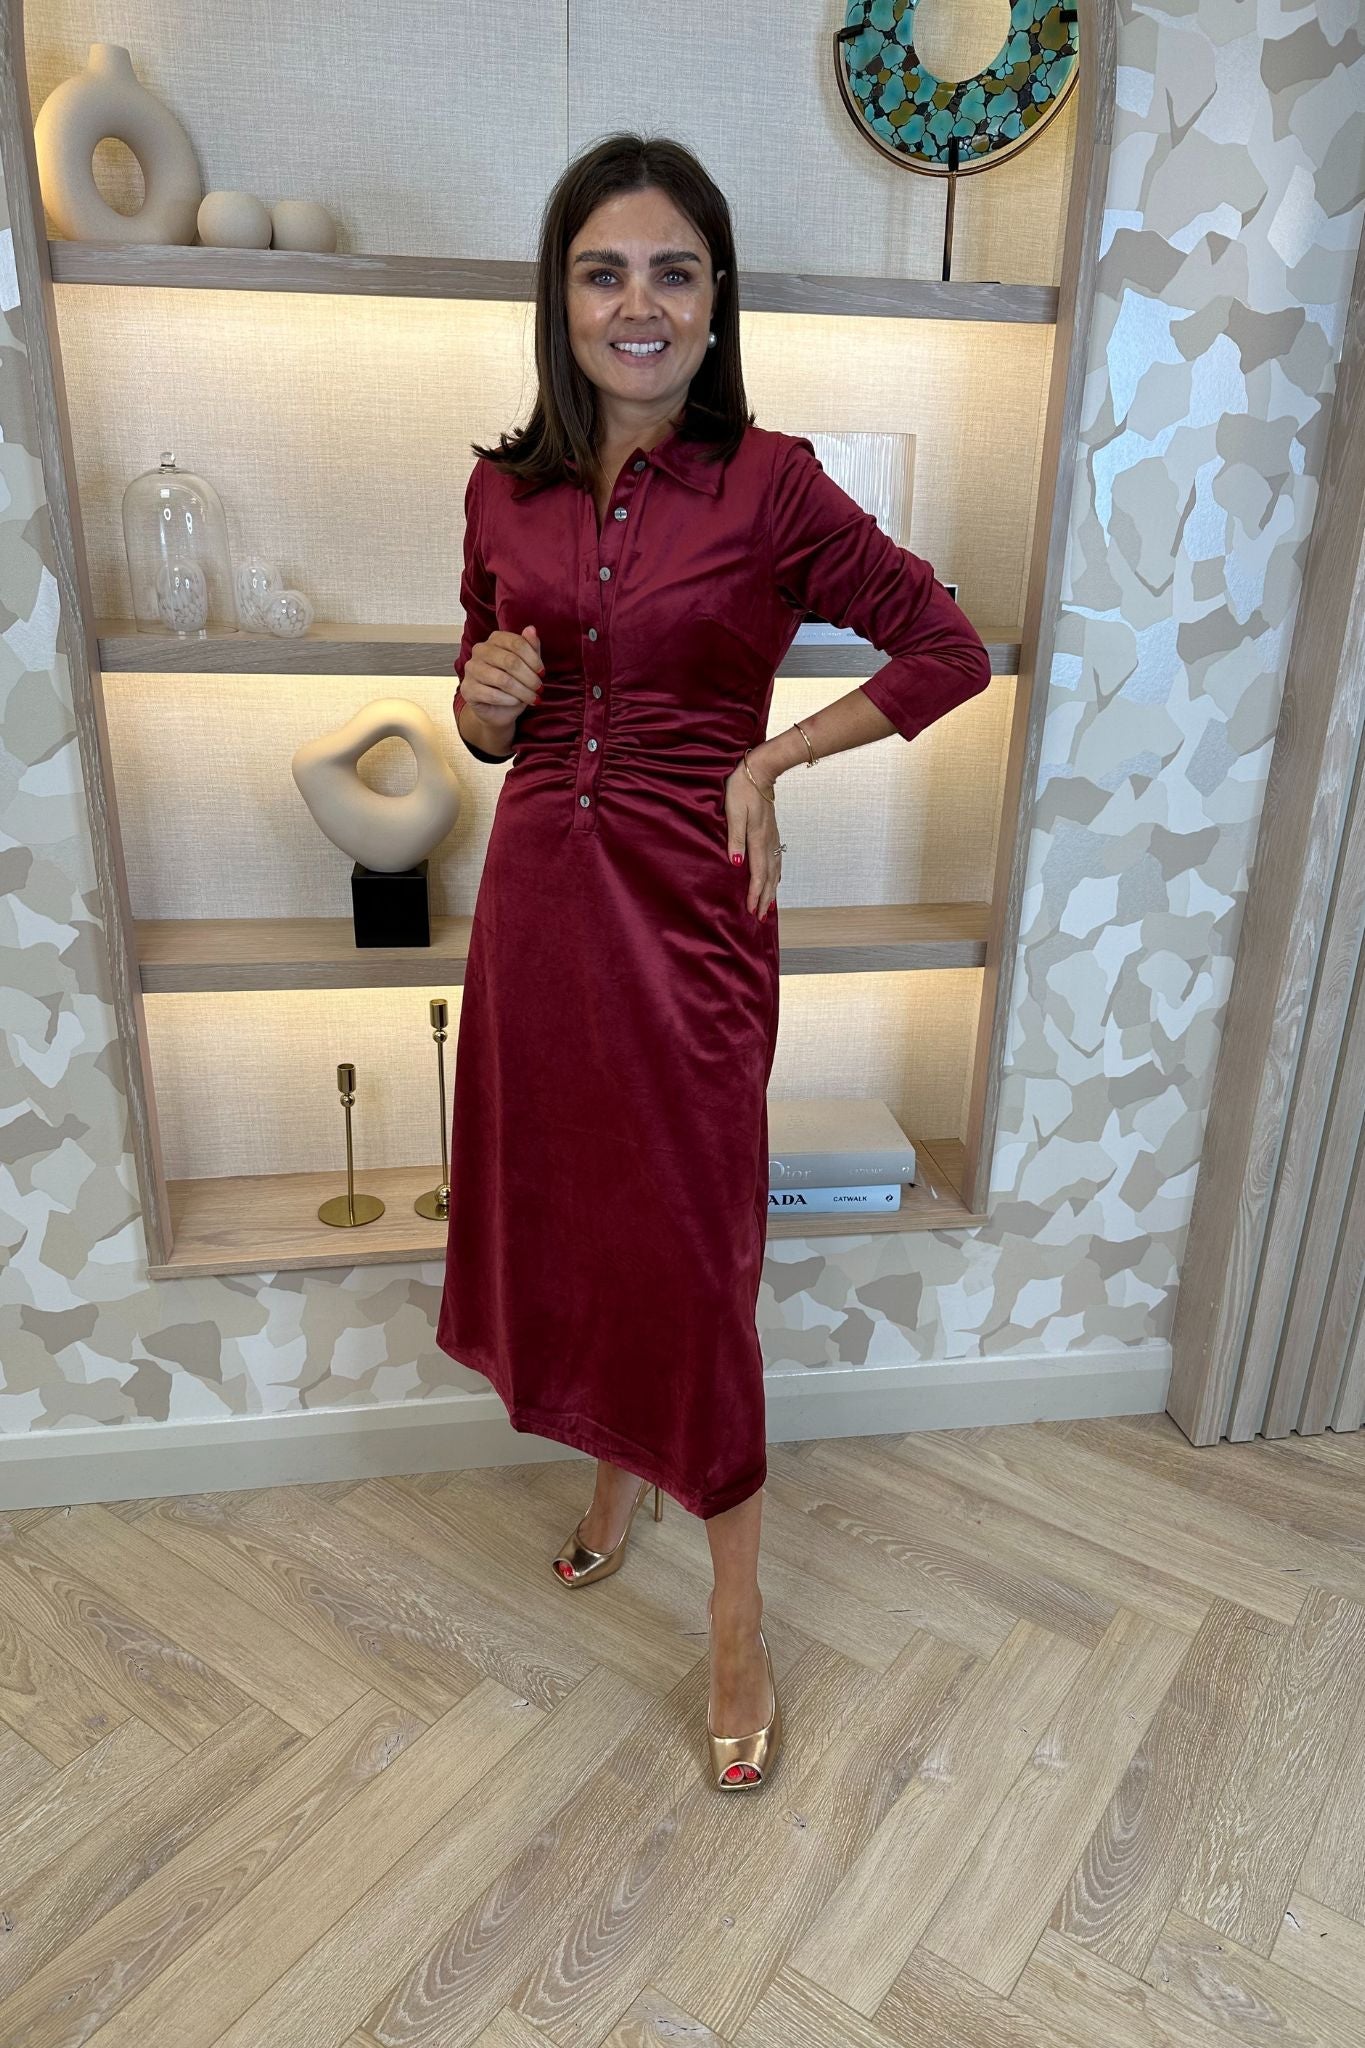 Jasmine Velvet Midi Dress In Red - The Walk in Wardrobe